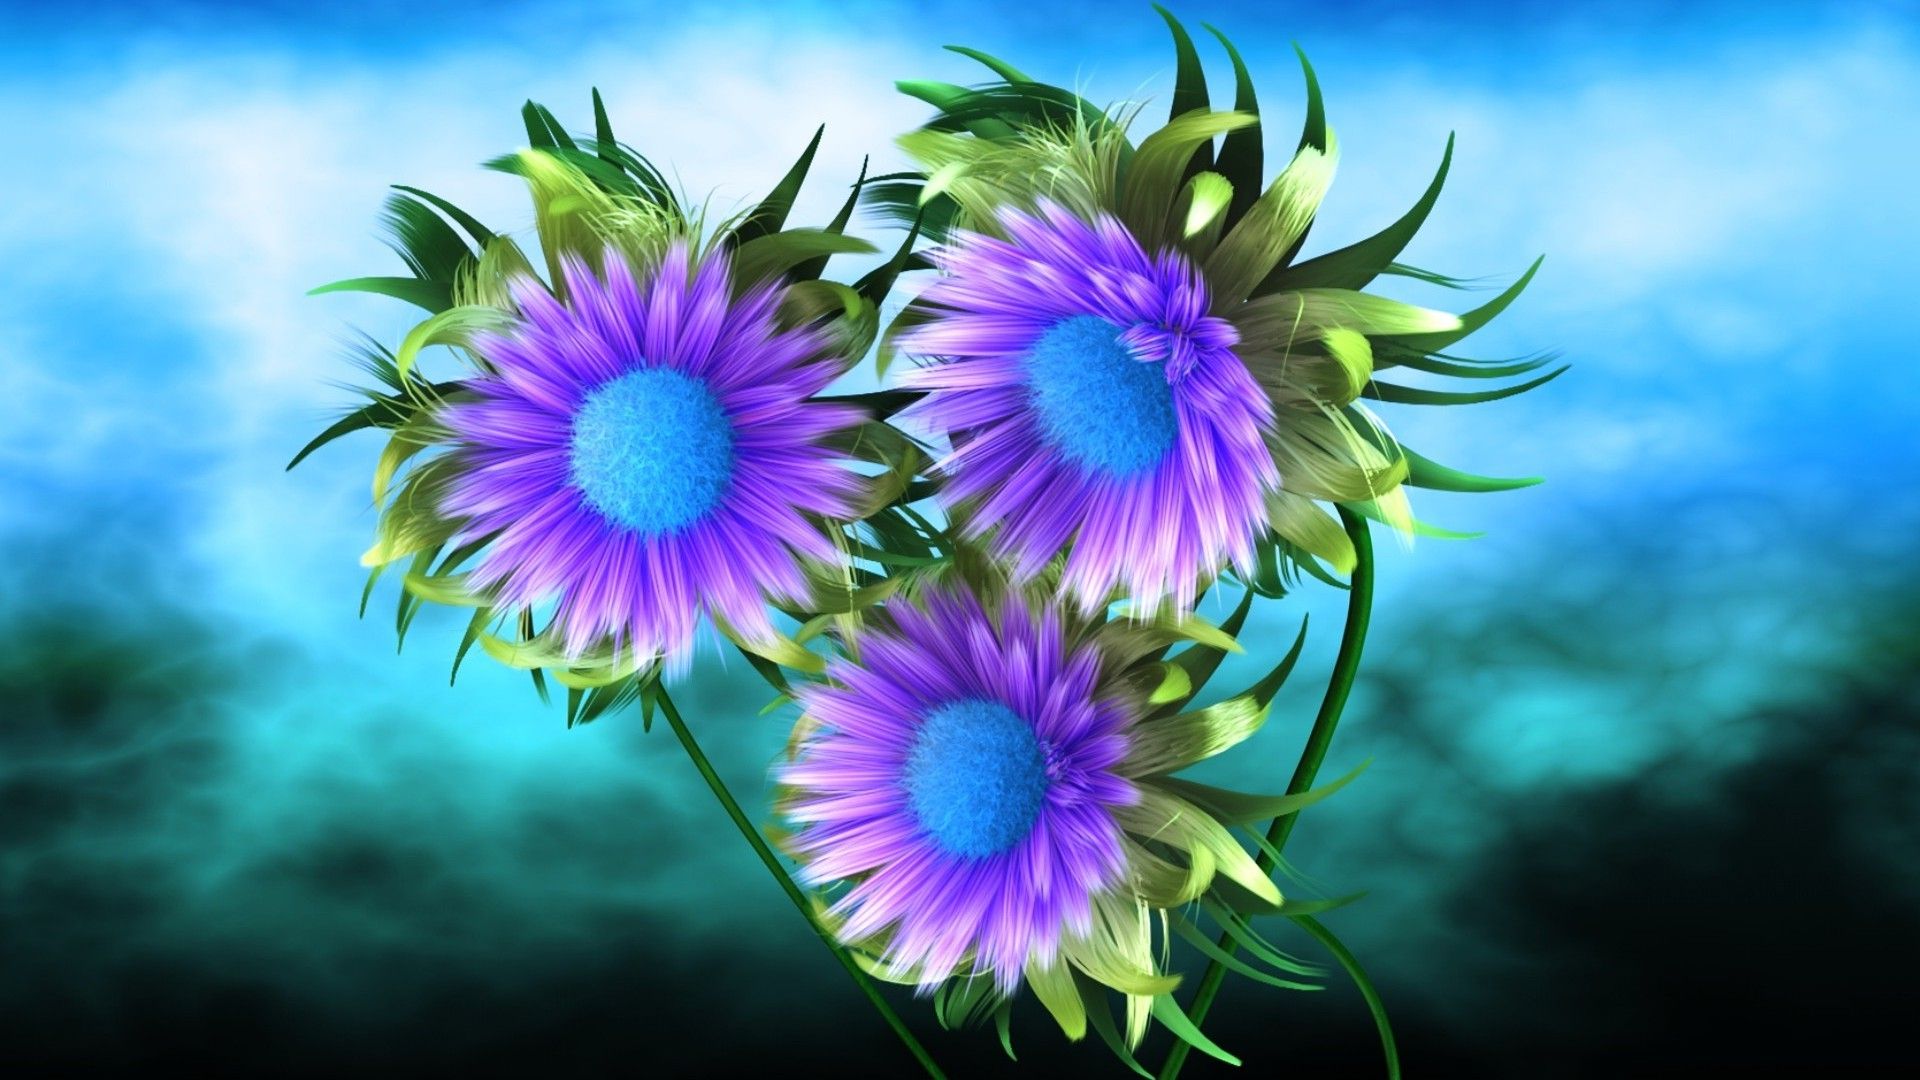 3D Purple Flower Wallpaper. Best HD Wallpaper. Purple flowers wallpaper, Purple flowers, Flower wallpaper